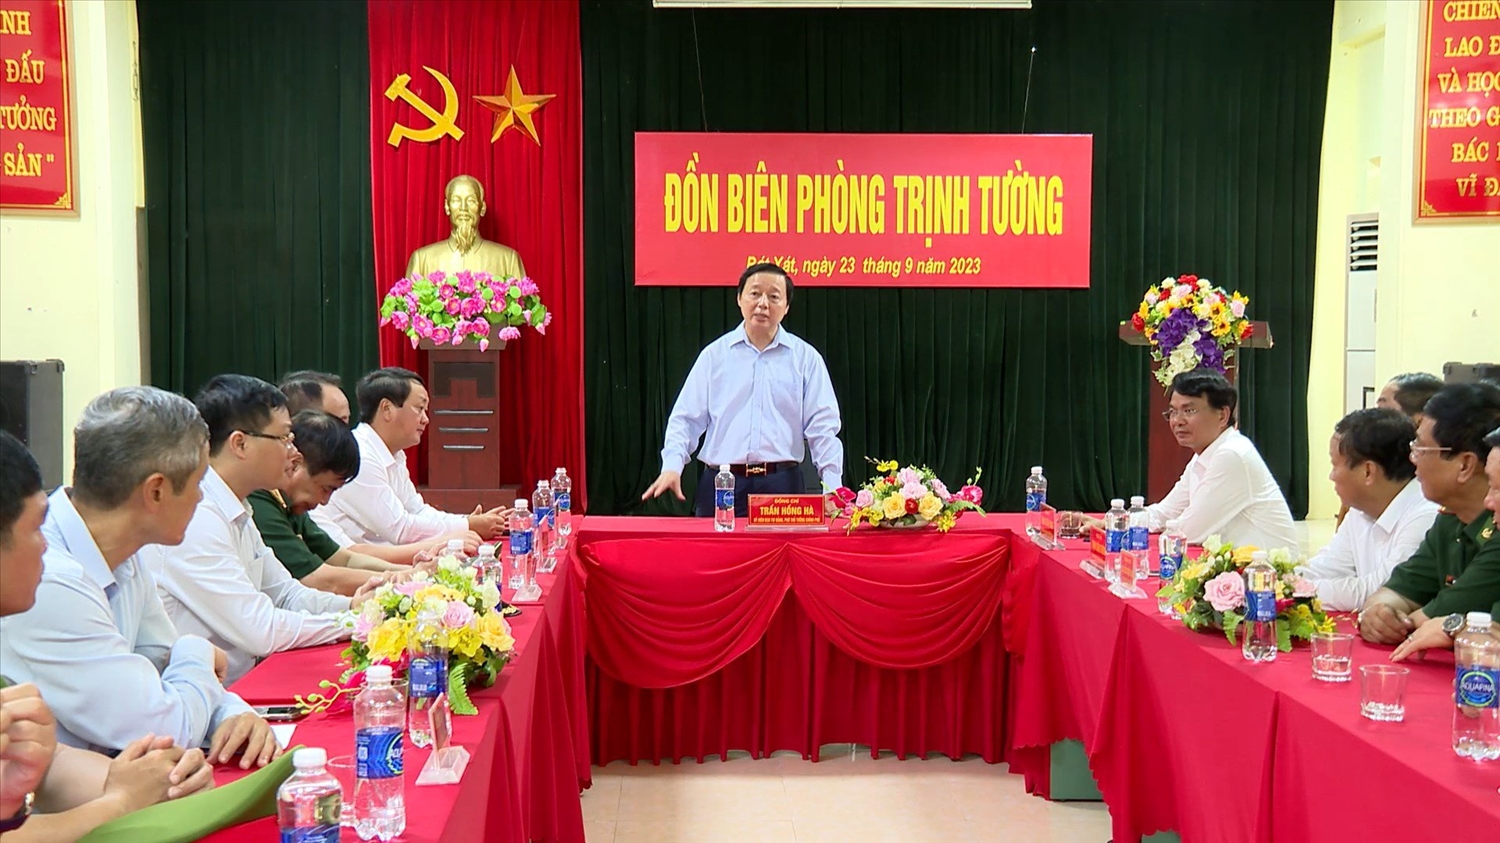 Phó Thủ tướng Trần Hồng Hà thăm, động viên cán bộ, chiến sỹ Đồn Biên phòng Trịnh Tường